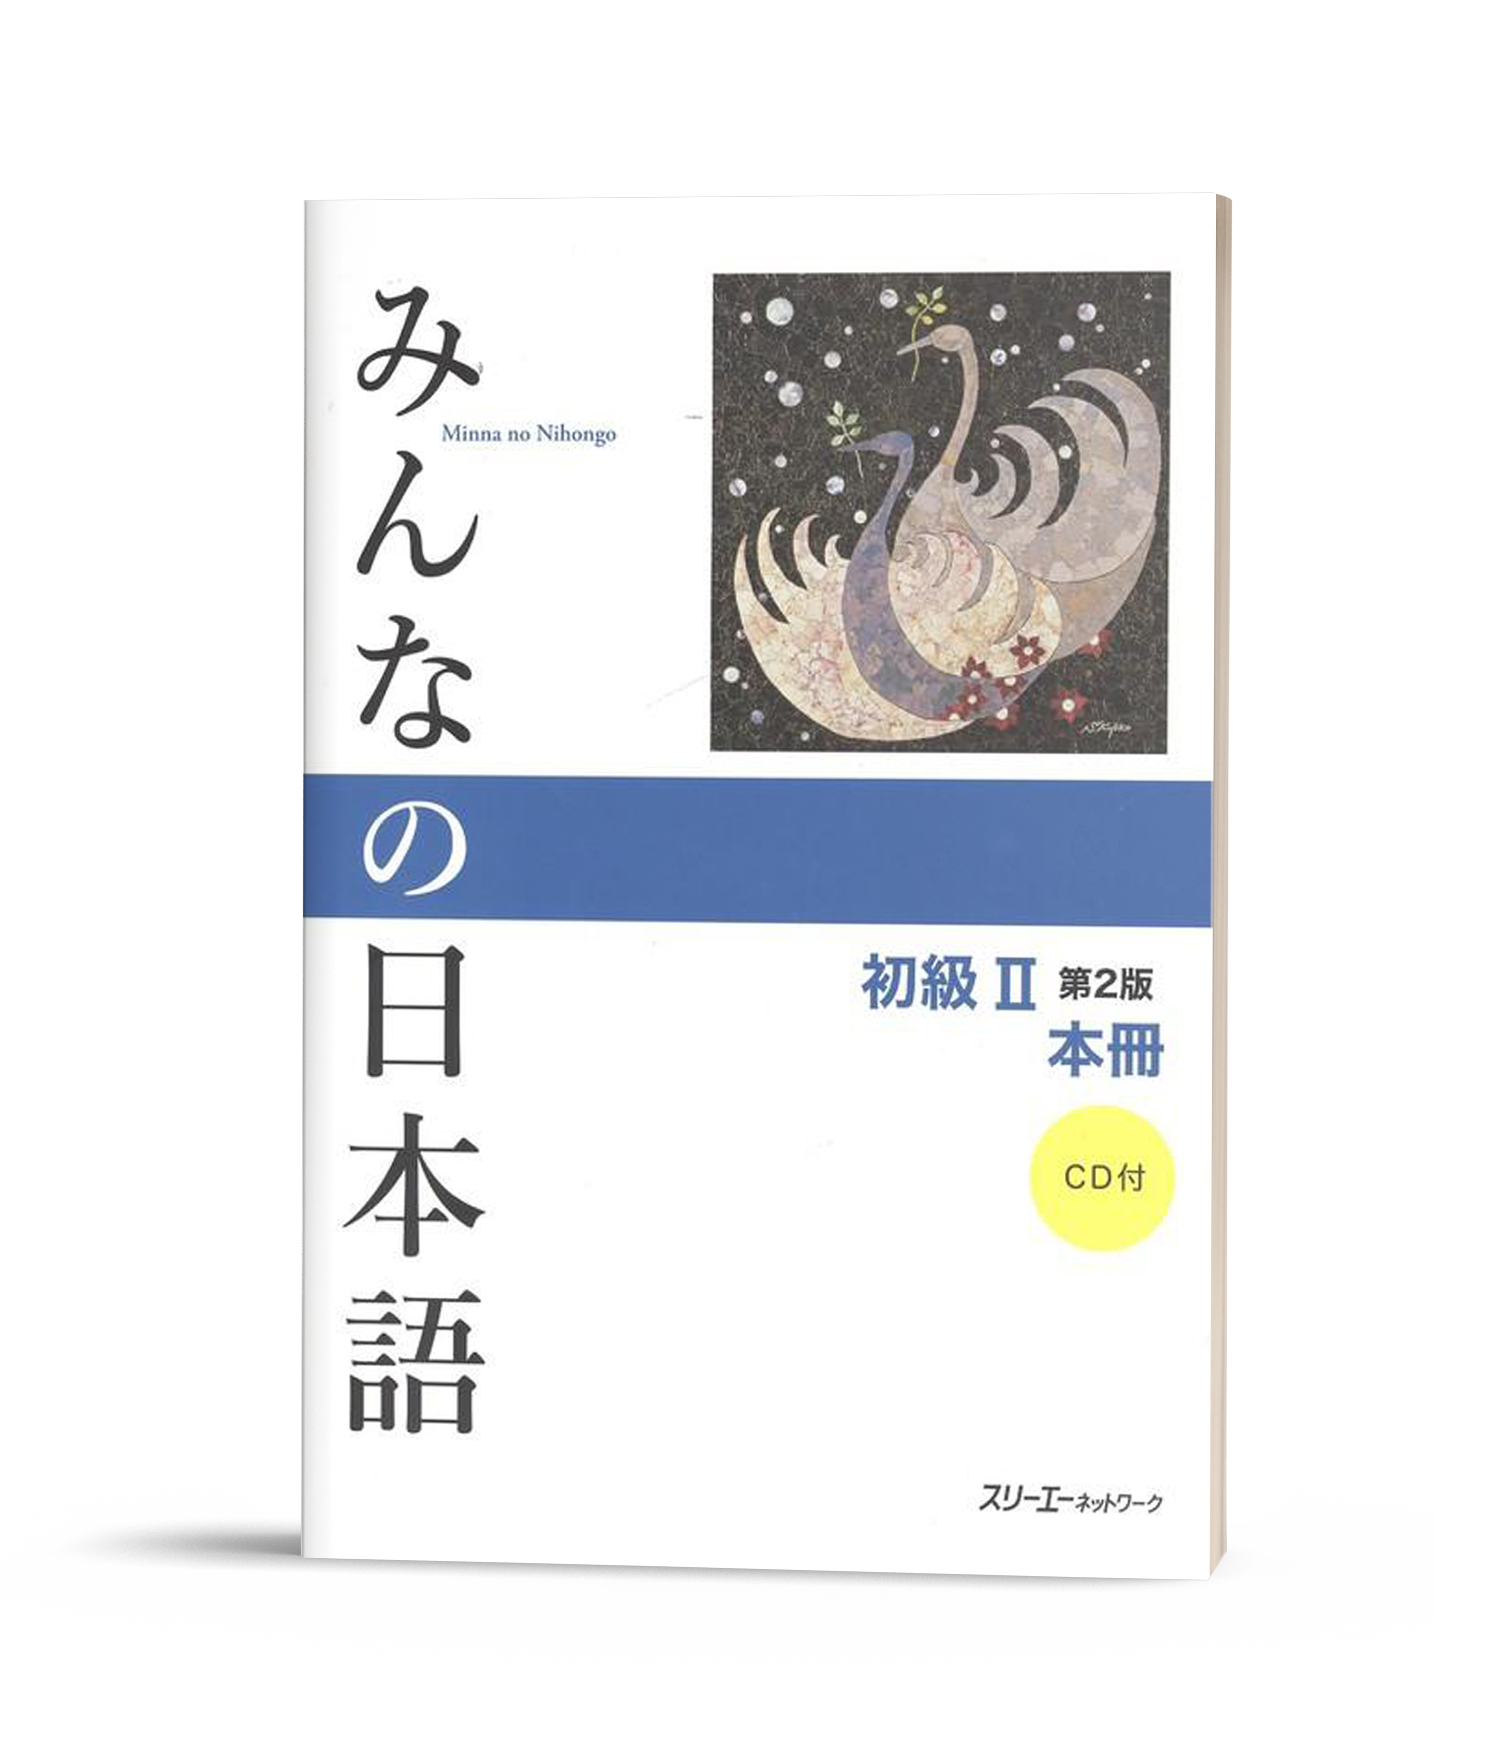 Minna No Nihongo Sơ Cấp 2 Tai Bản Sach Giao Khoa Kem Cd Sach Tiếng Nhật